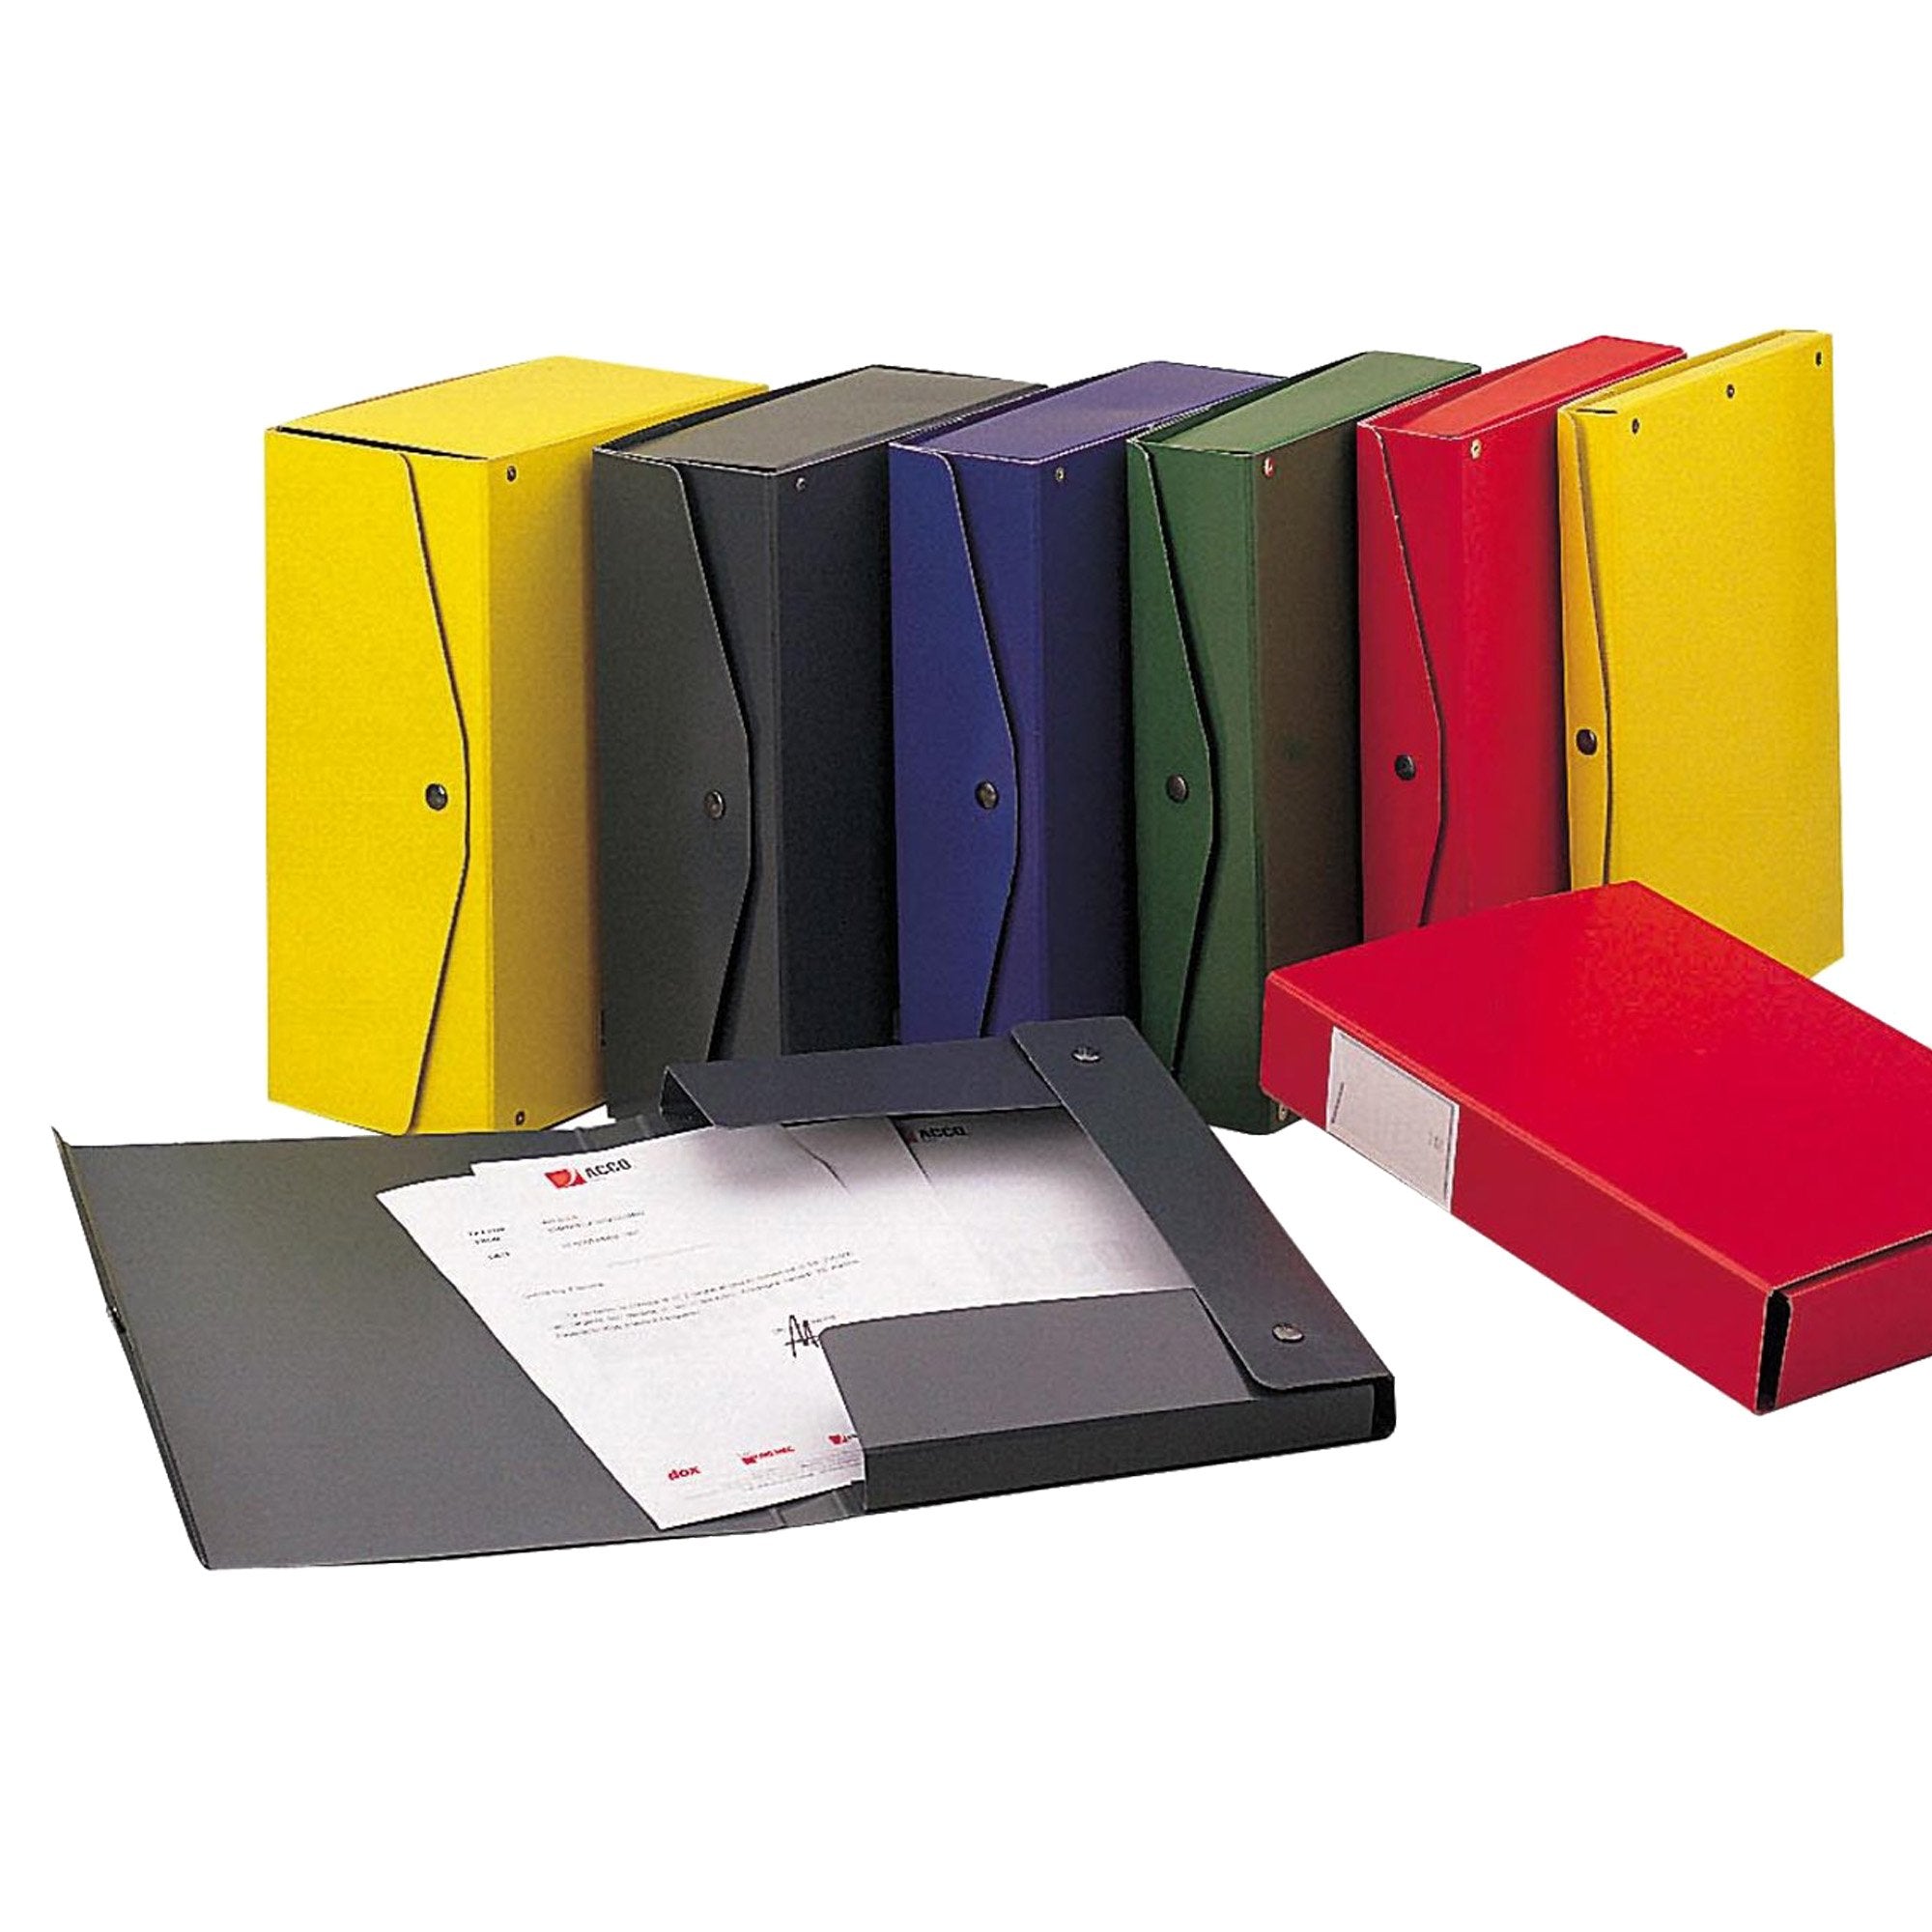 king-mec-scatola-archivio-project-8-giallo-25x35cm-dorso-8cm